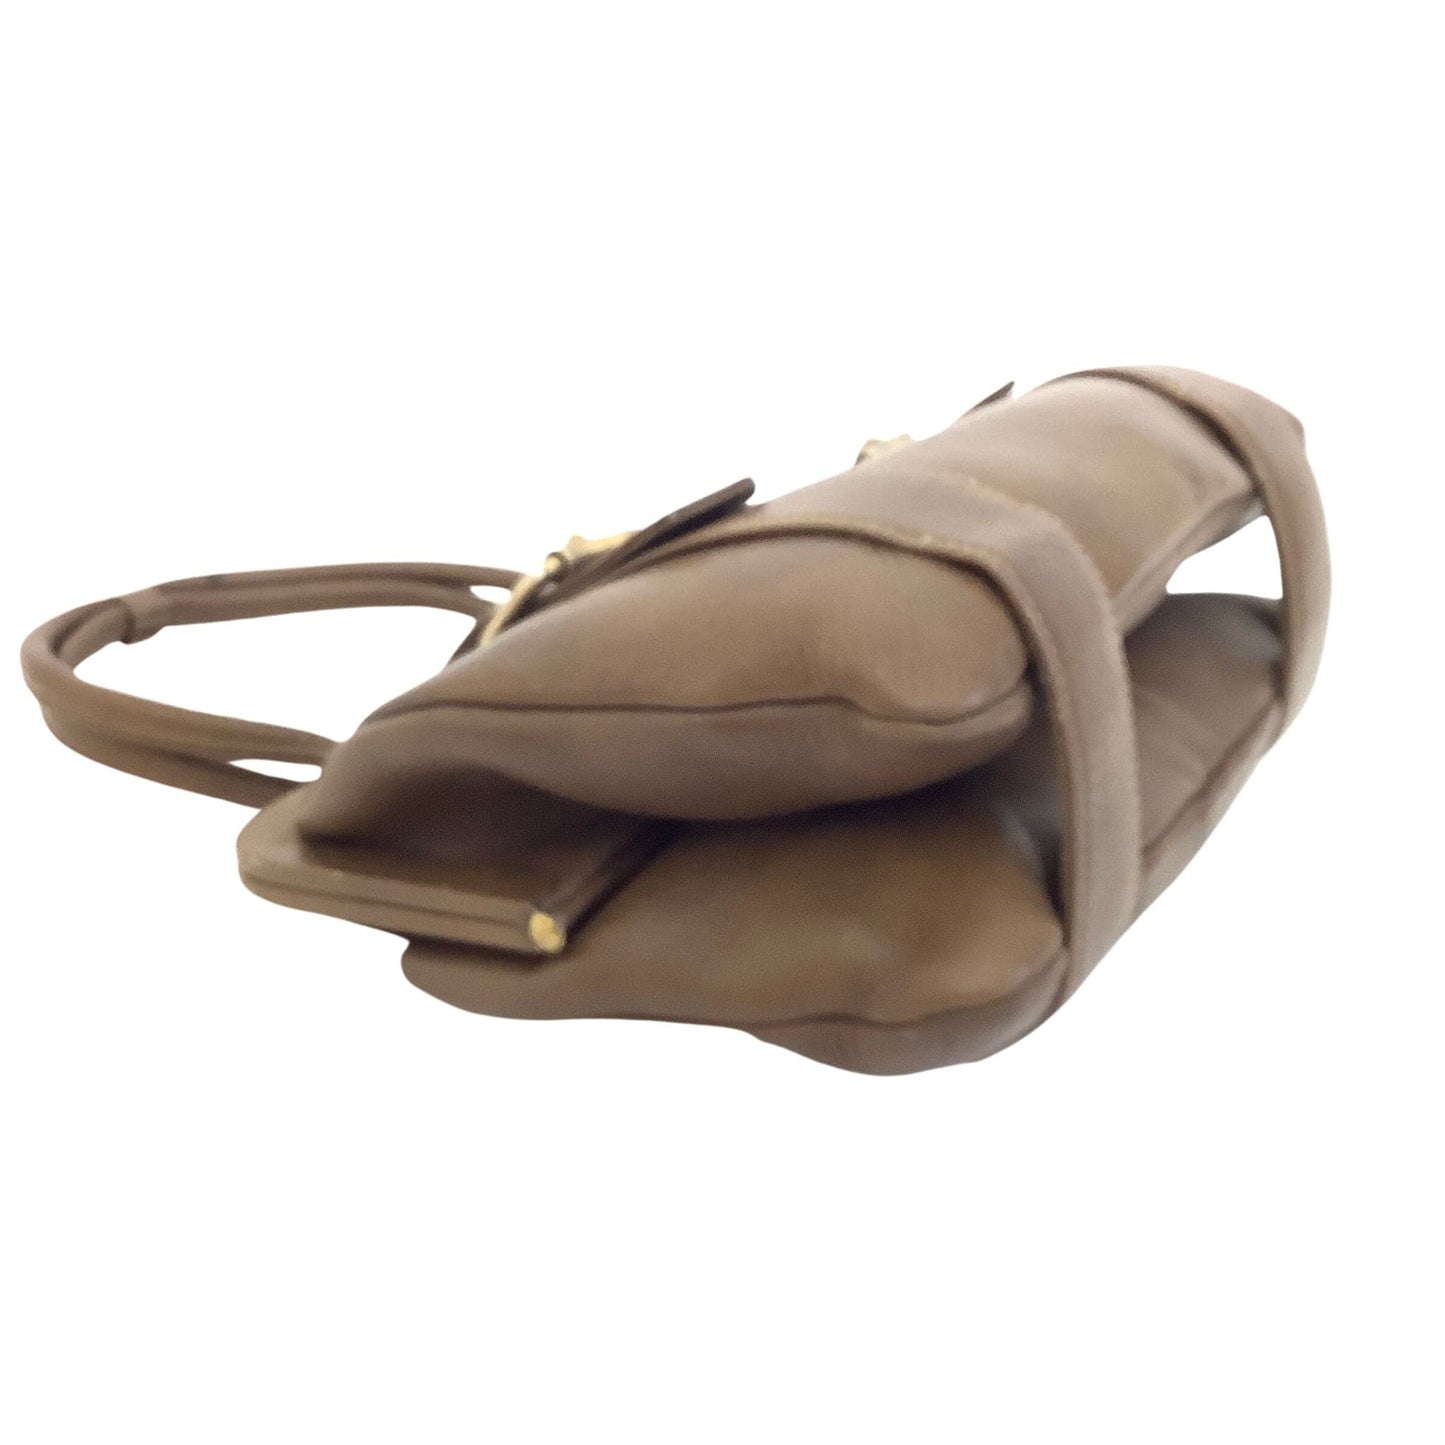 VTG School Style Satchel Bag Brown / Leather / Vintage 1980s